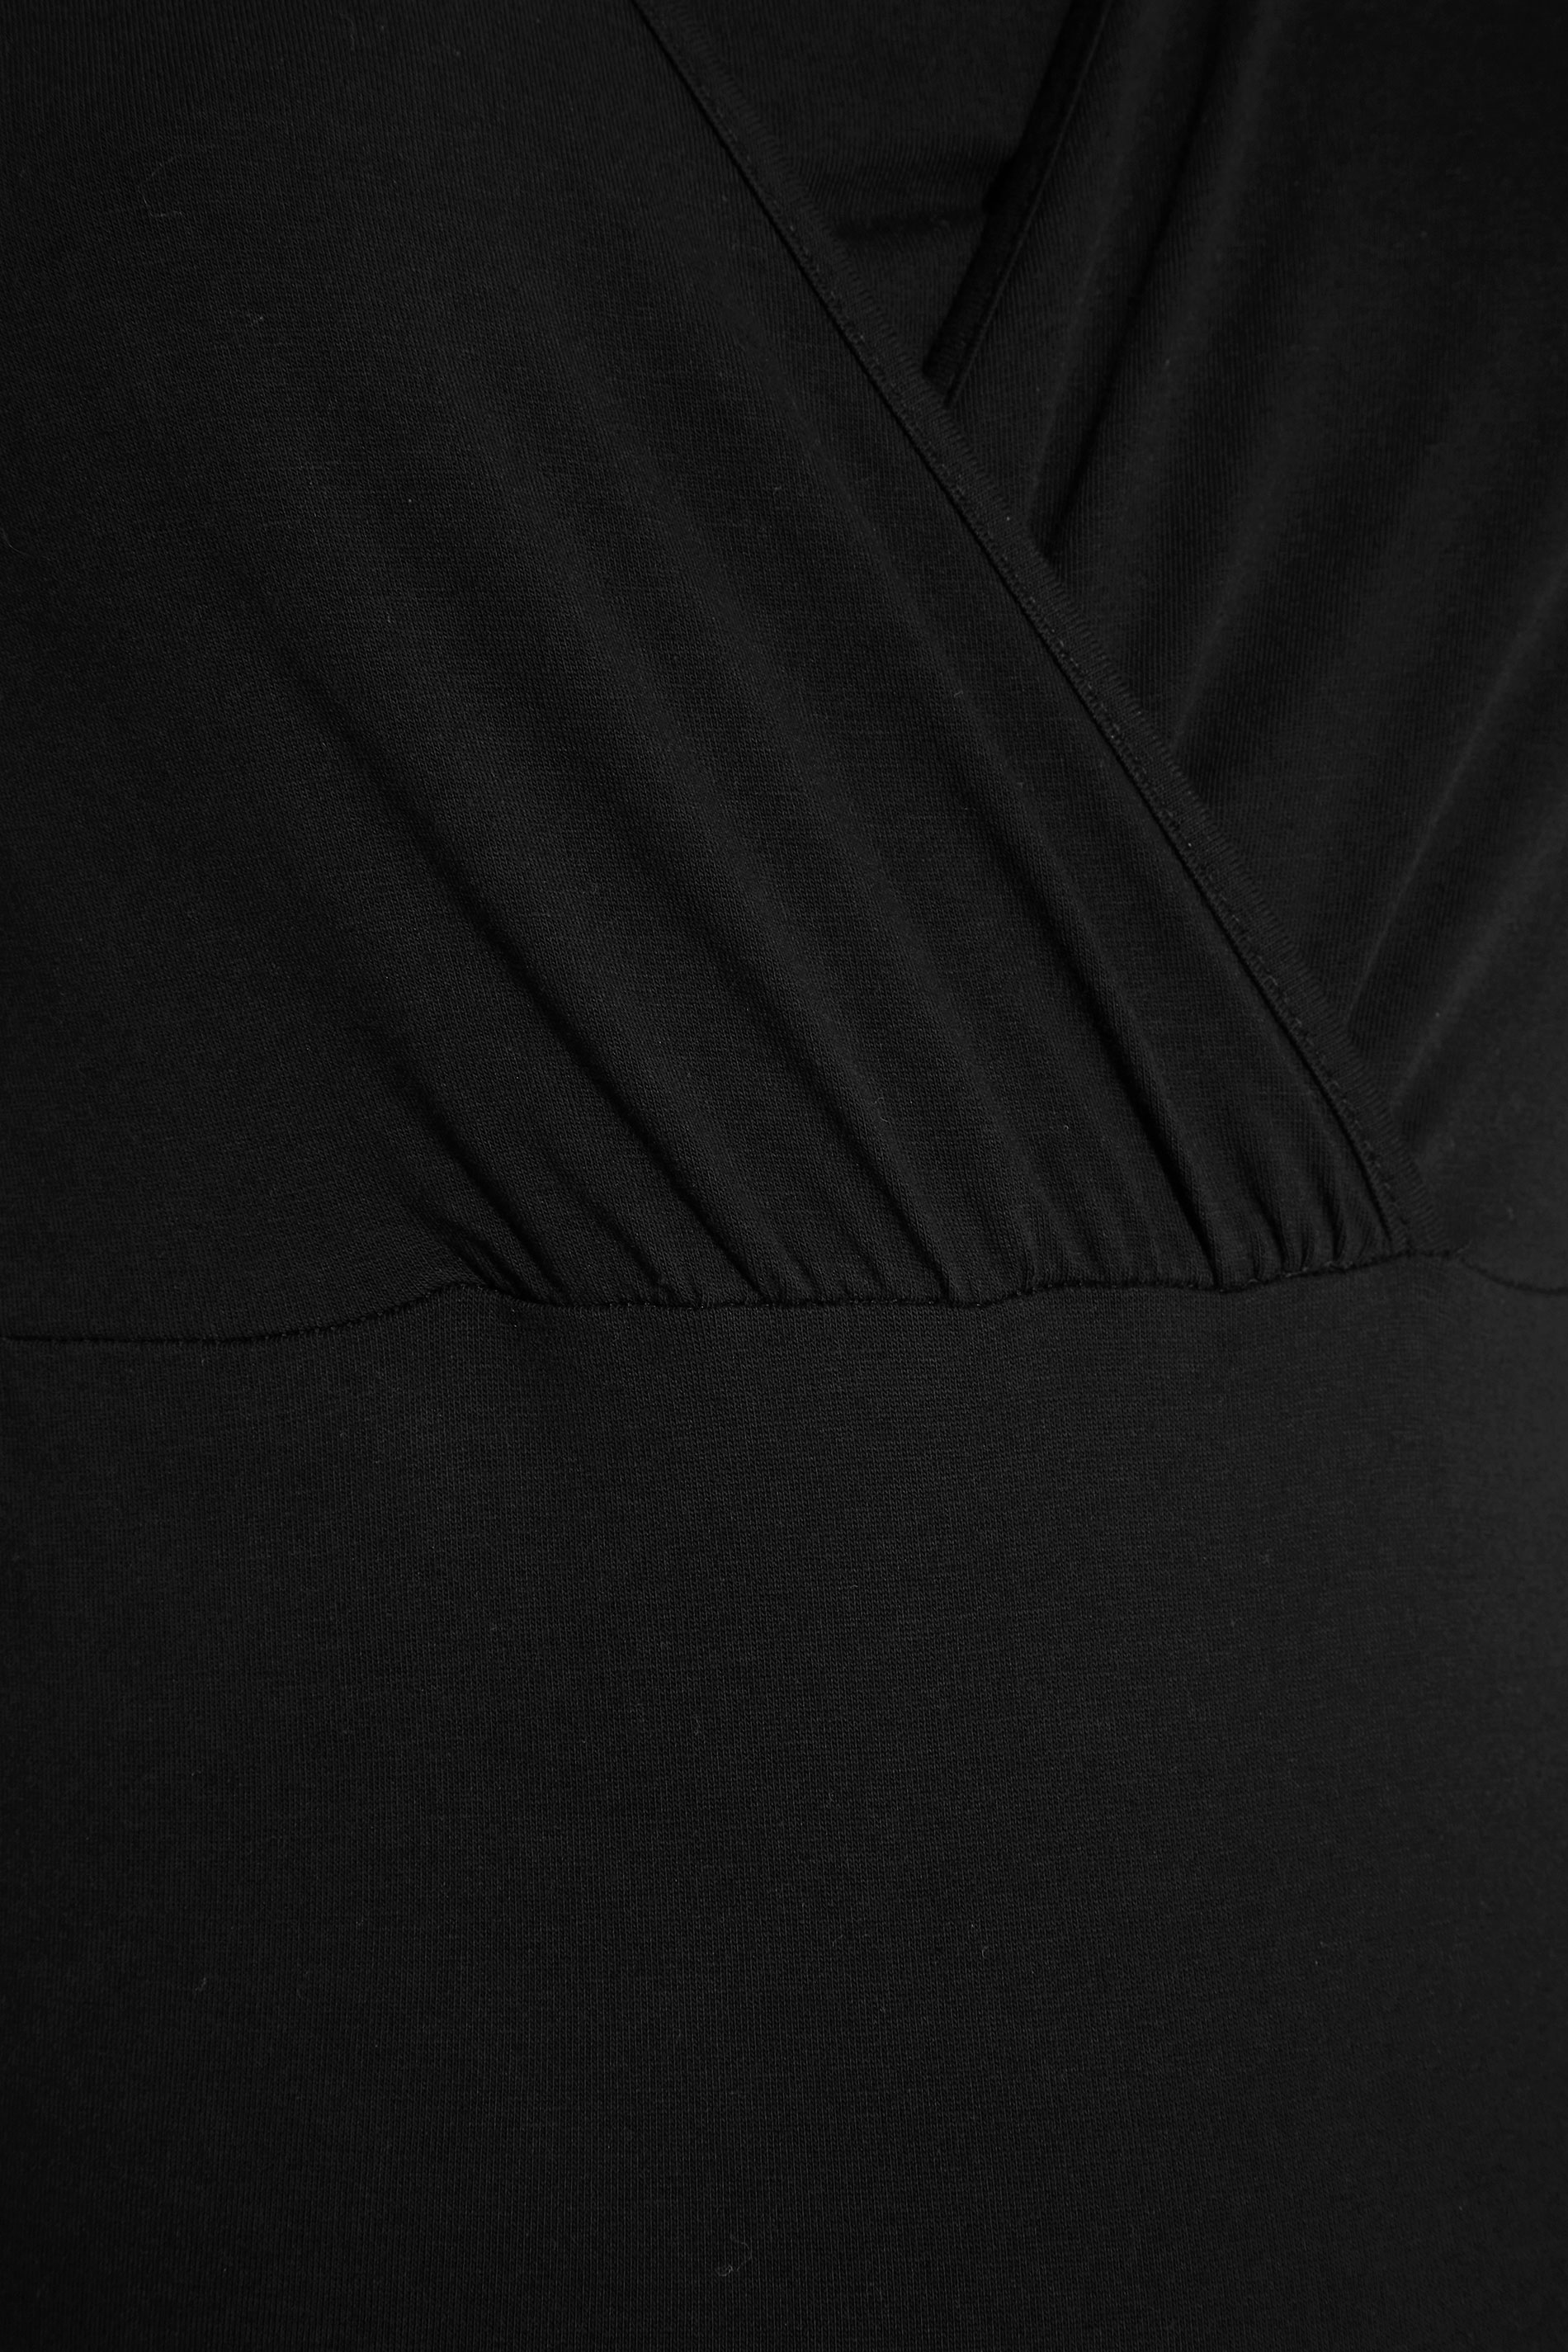 Grande taille  Vêtements de Grossesse Grande taille  Tops et t-shirts de grossesse | BUMP IT UP MATERNITY - Top Noir en Coton d'Allaitement - YF53430